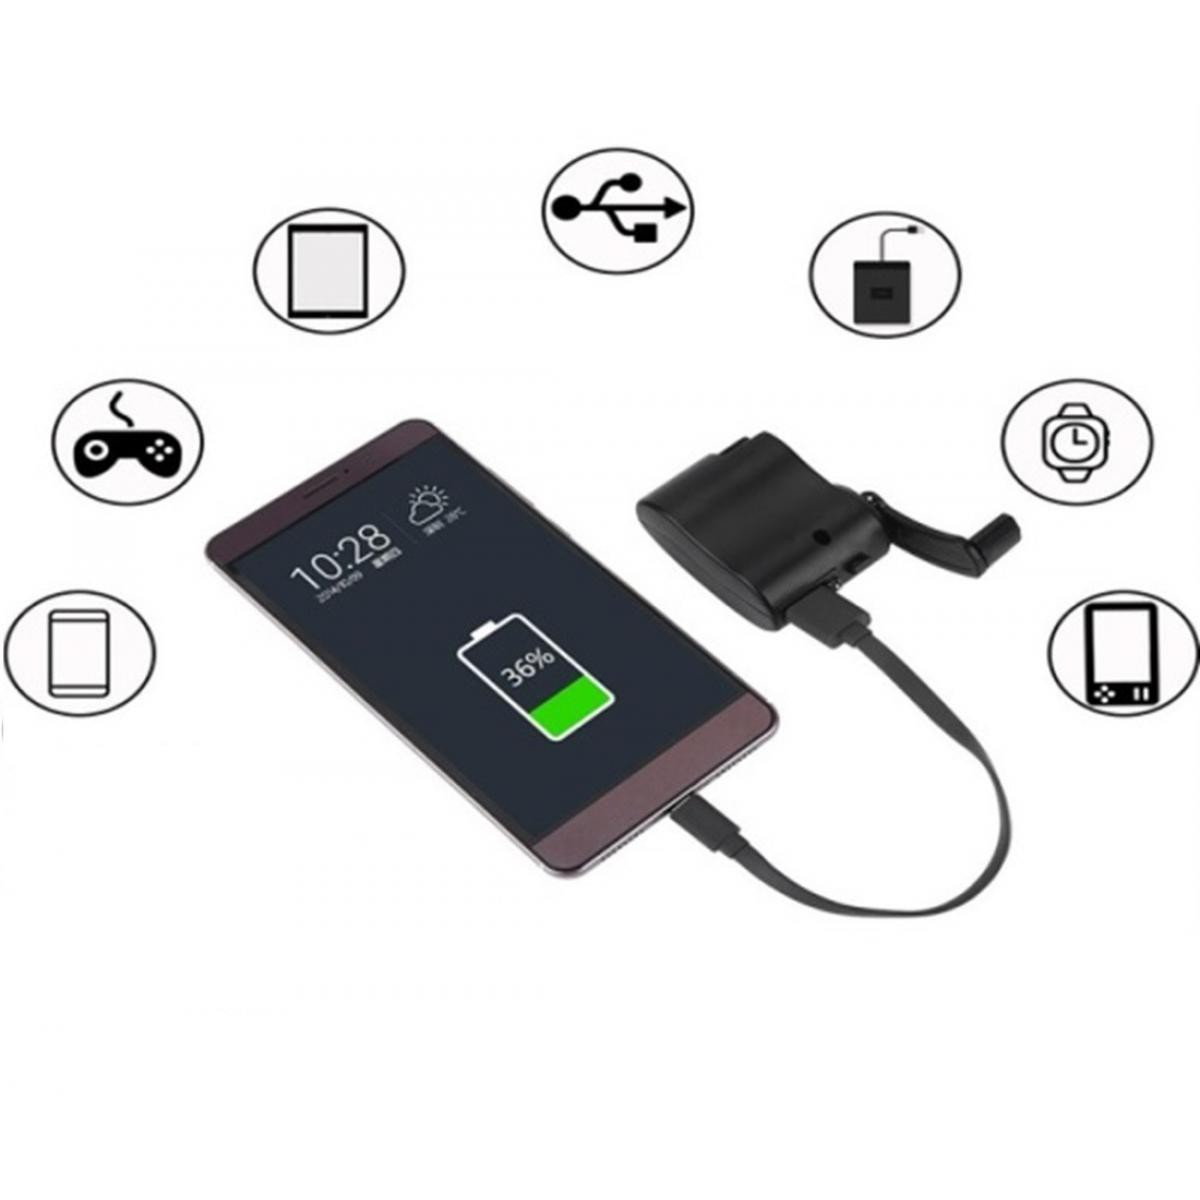 Shot - Dynamo pour OPPO Reno Z Smartphone Chargeur USB Batterie Manivelle Secours (NOIR) - Autres accessoires smartphone